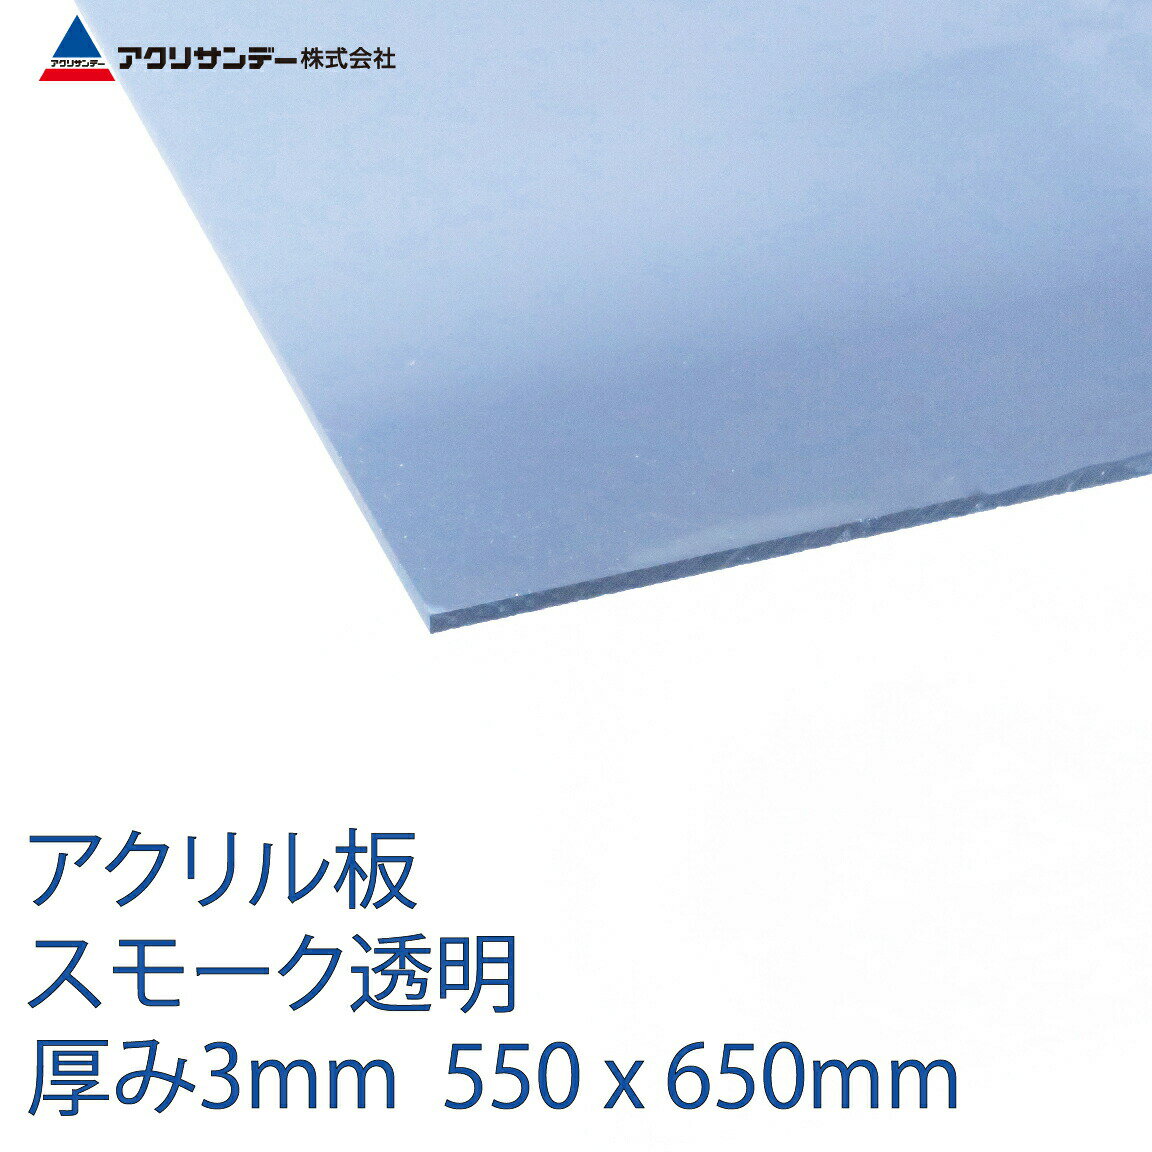 アクリル スモーク(530) 透明 厚み3mm 550×650mm キャスト板 Mサイズ プラスチック 色板 DIY アクリサンデー